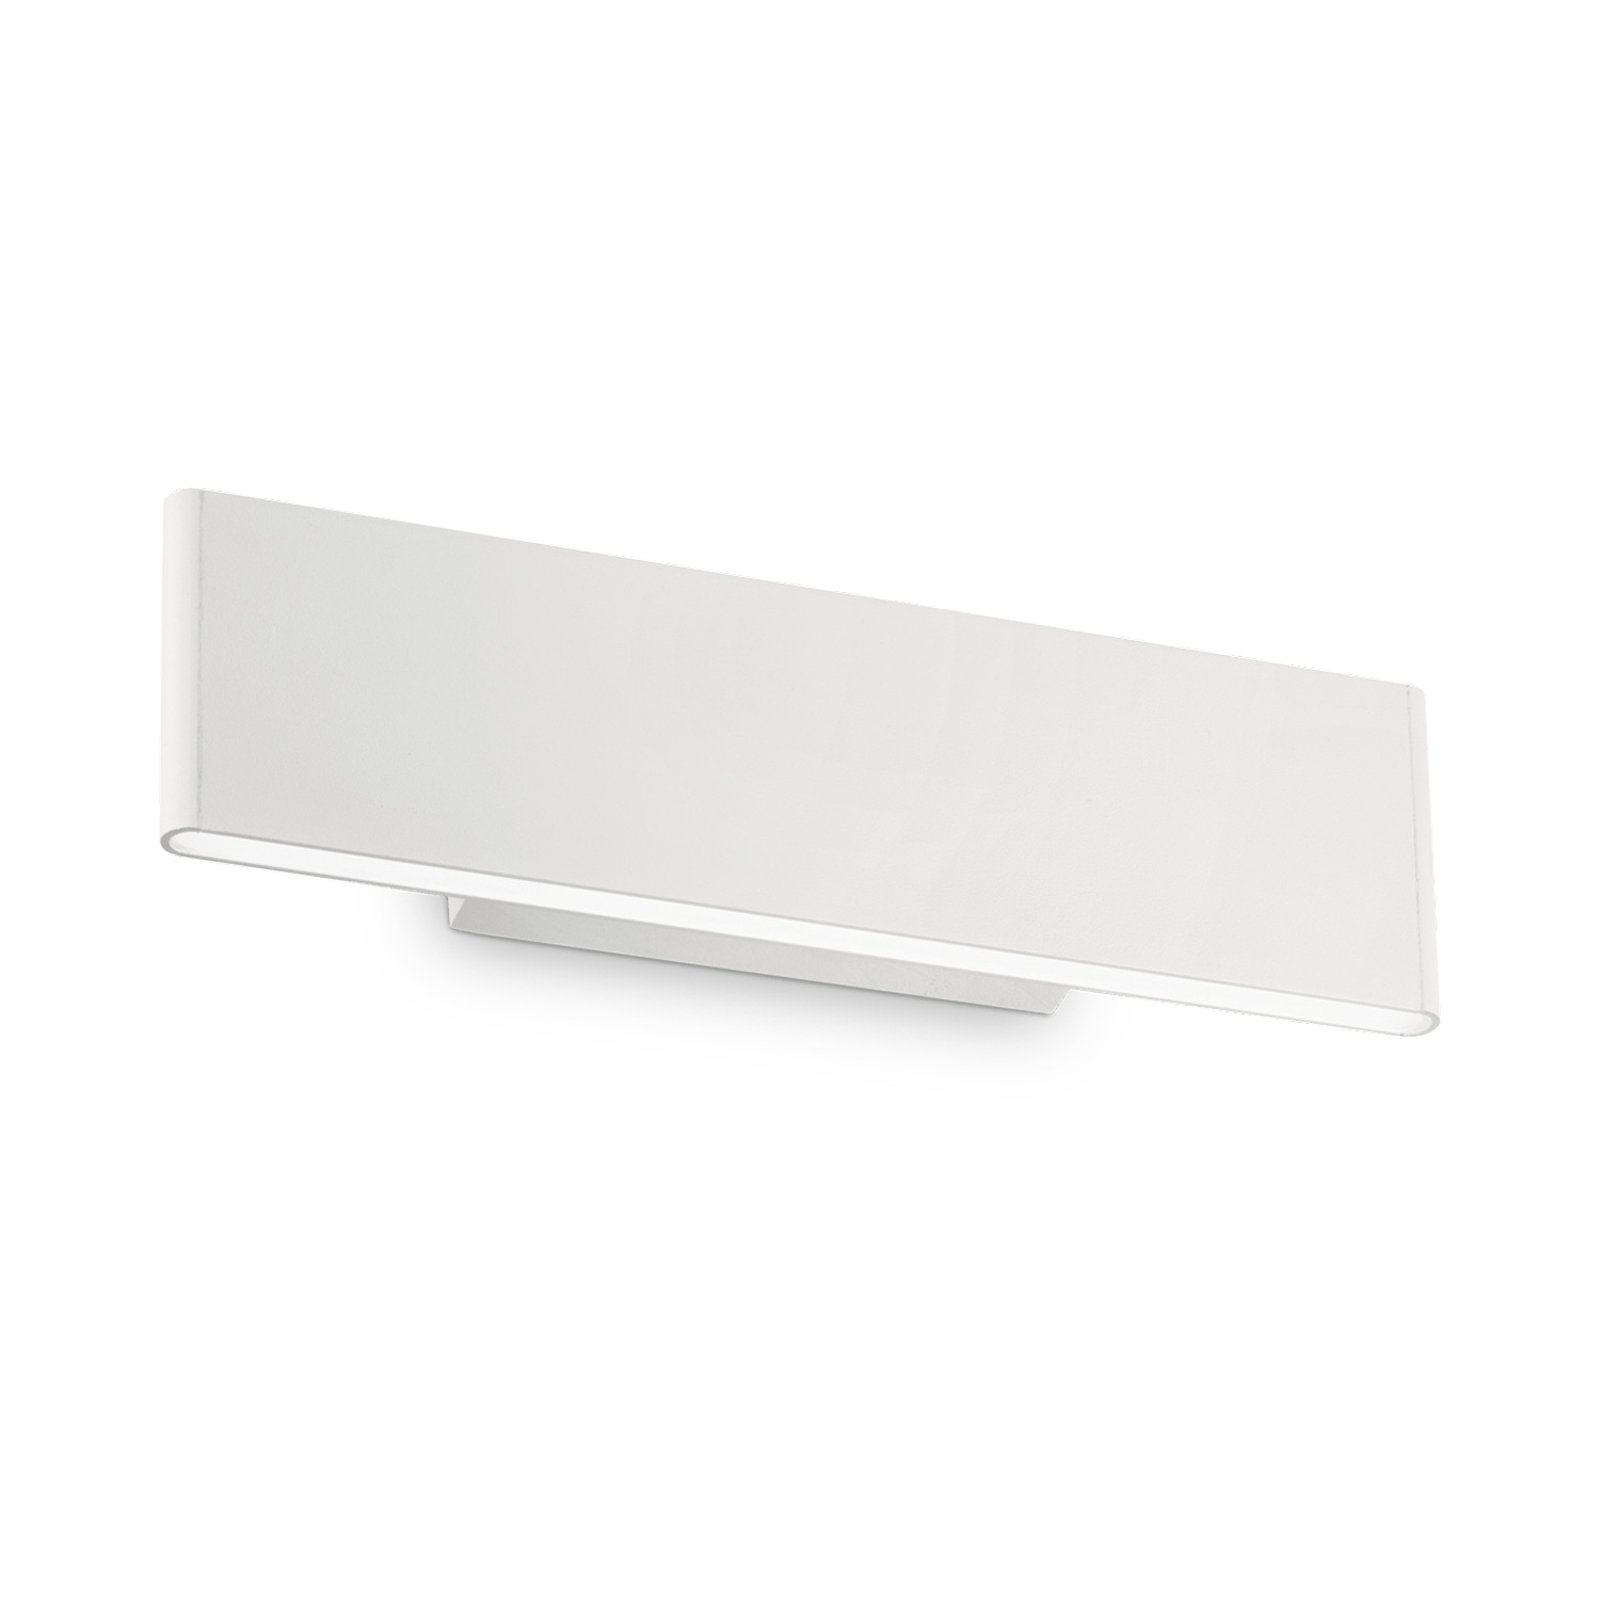 Desk LED wall light white, light top / bottom